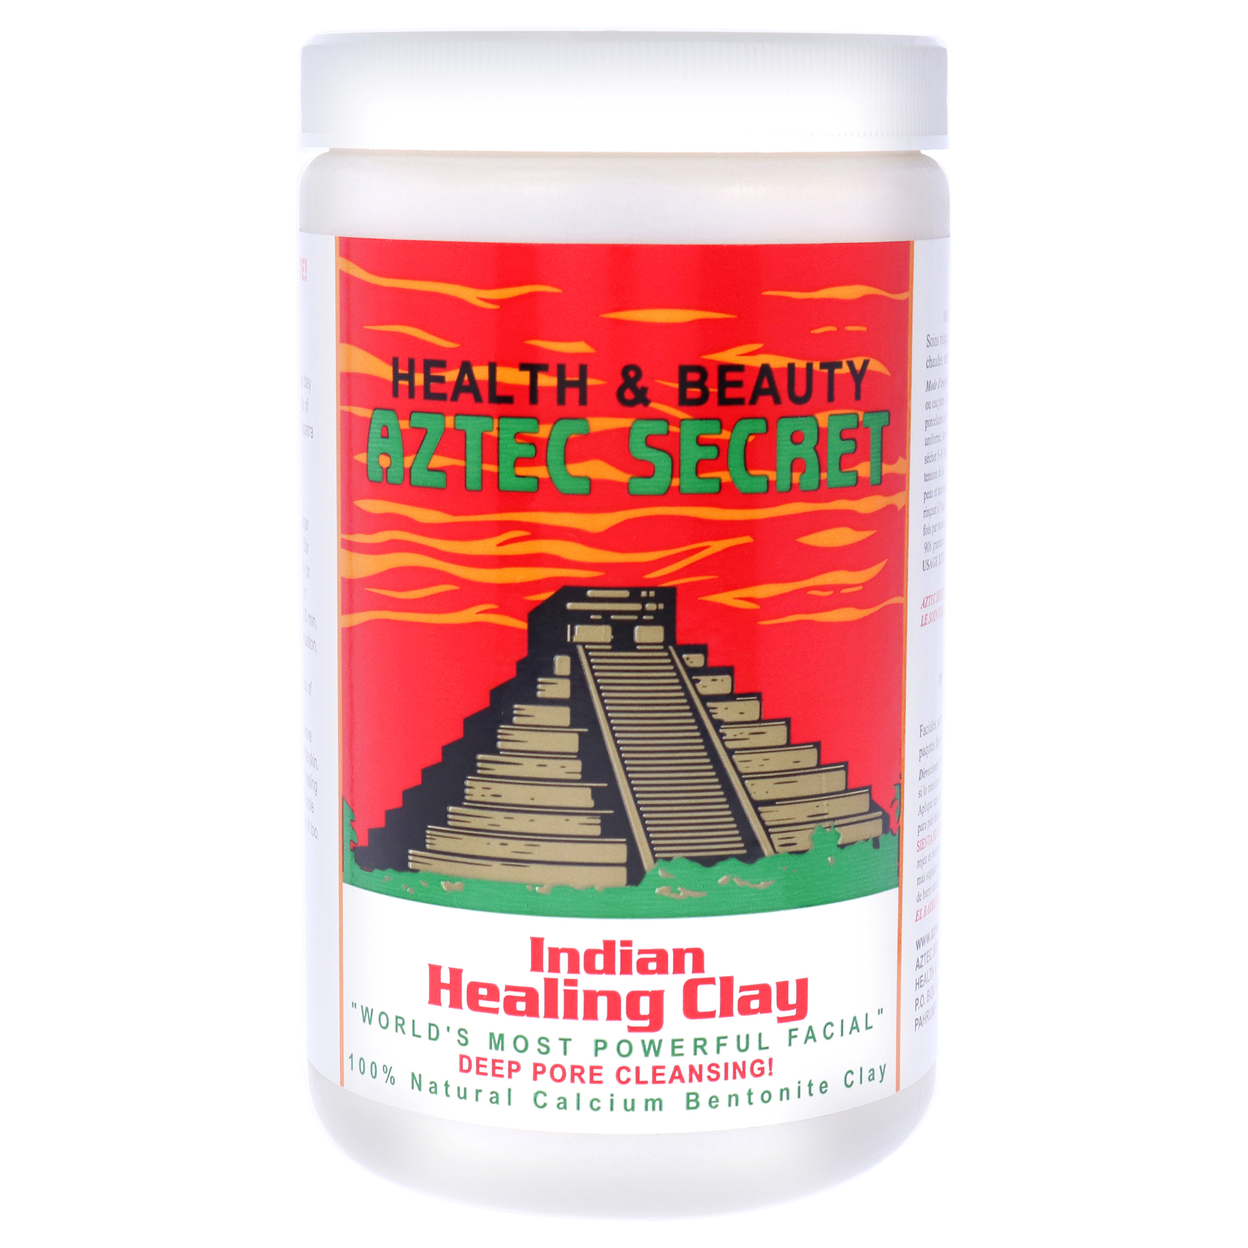 Aztec Secret Indian Healing Clay 2 Lb